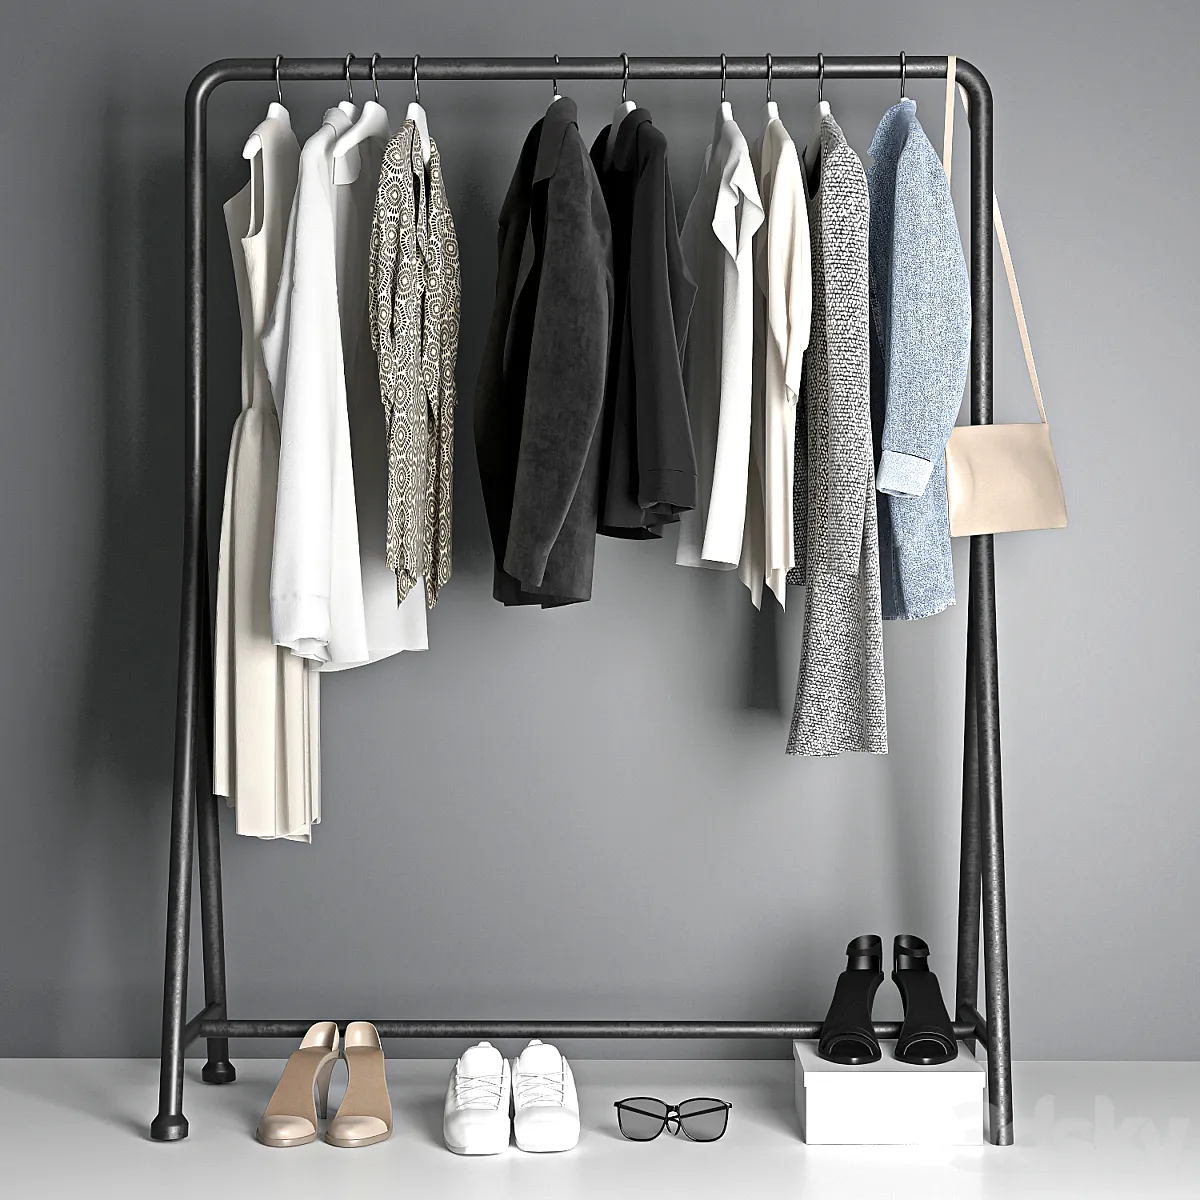 3dsky – clothes hanger – Clothes